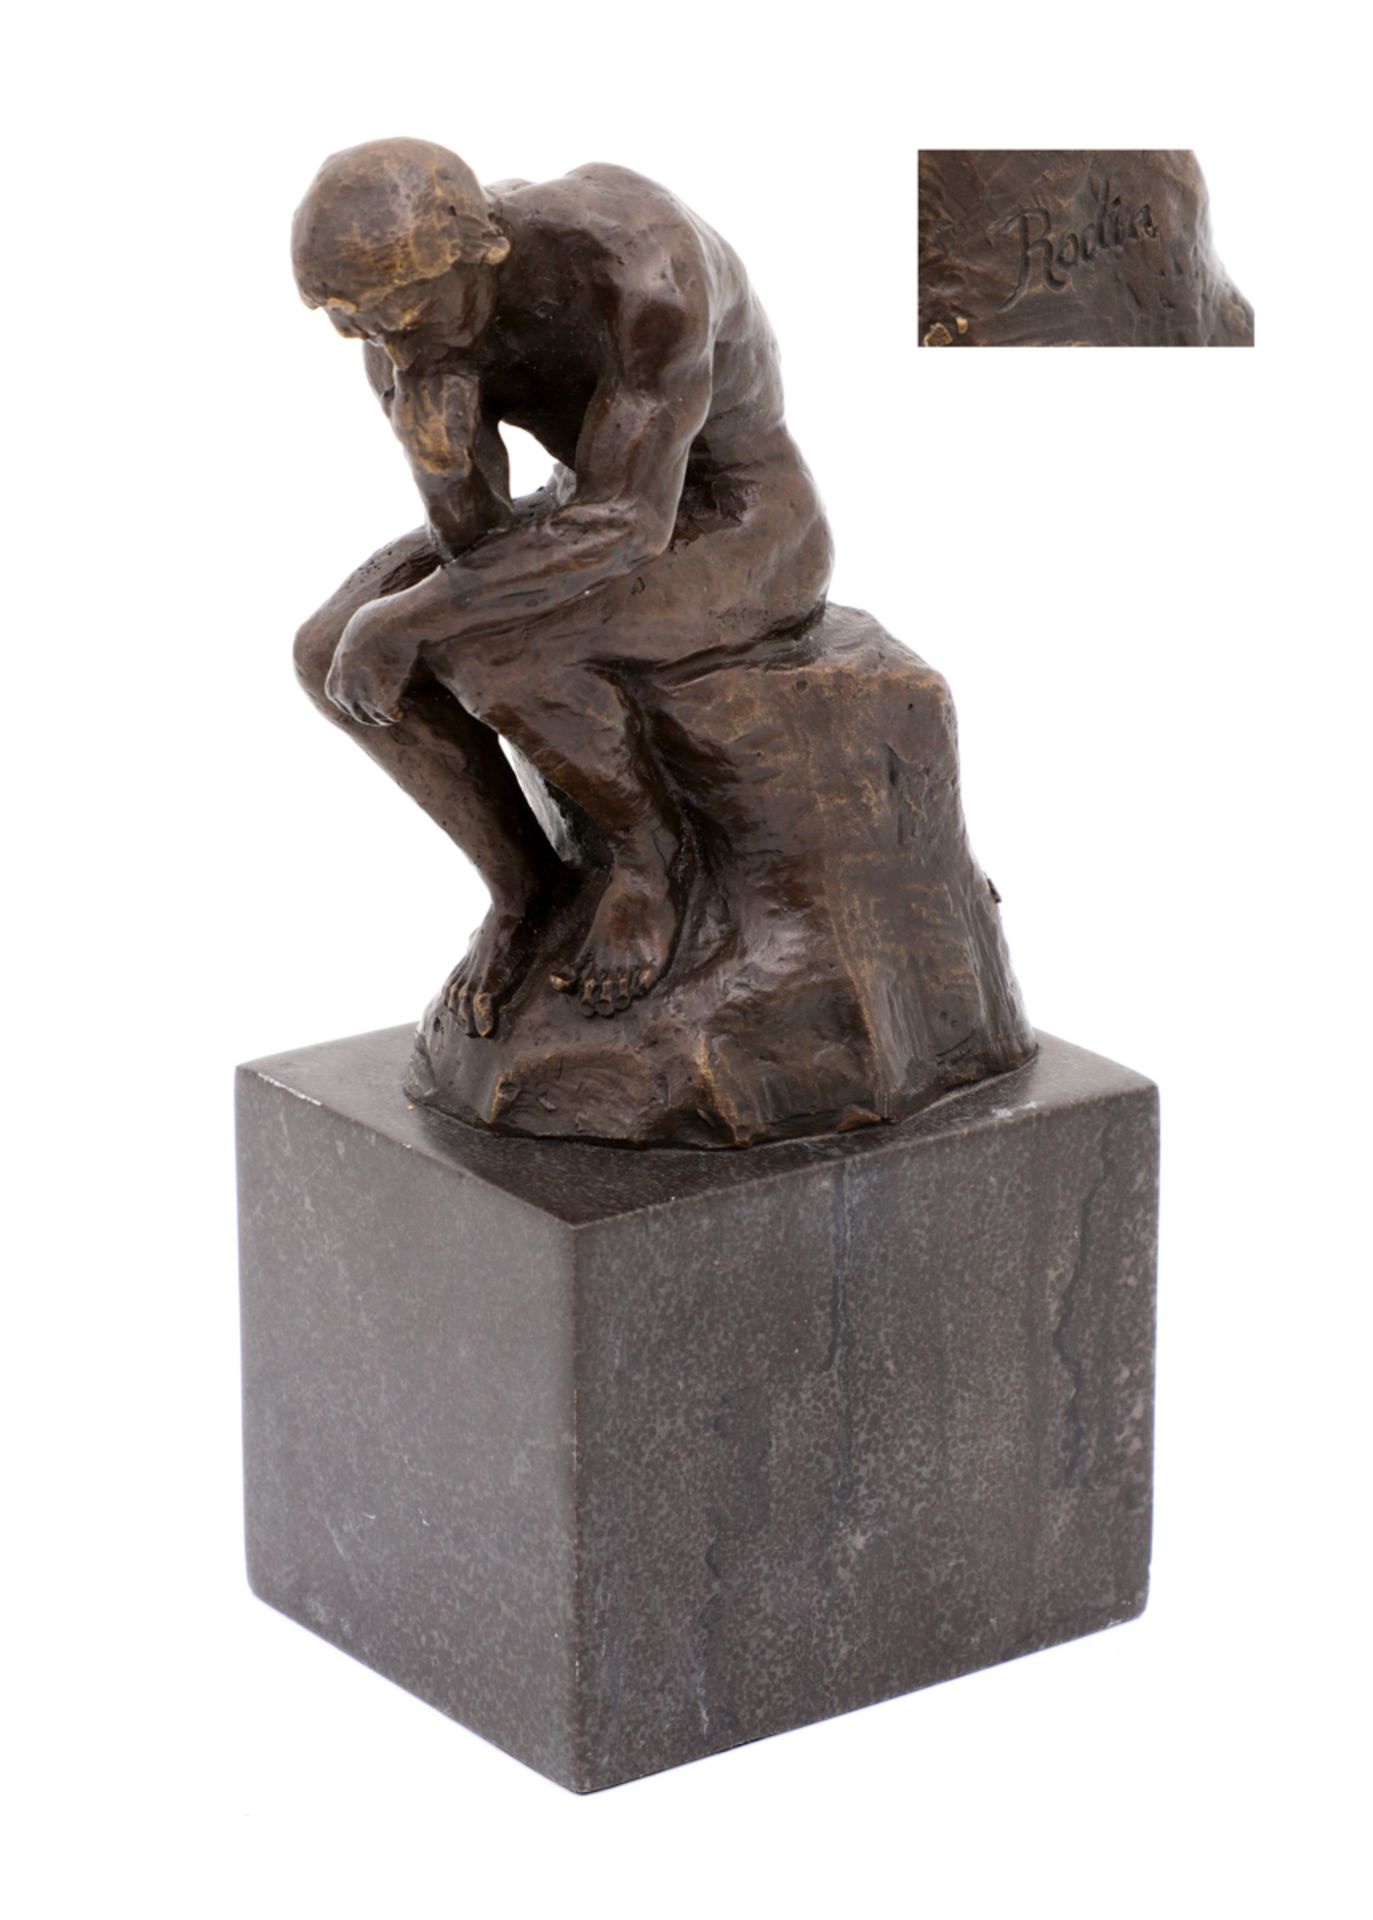 "LE PENSEUR" Bronze sculpture, after "Le Penseur" by Rodin, signed "Rodin". Black marble base. Total